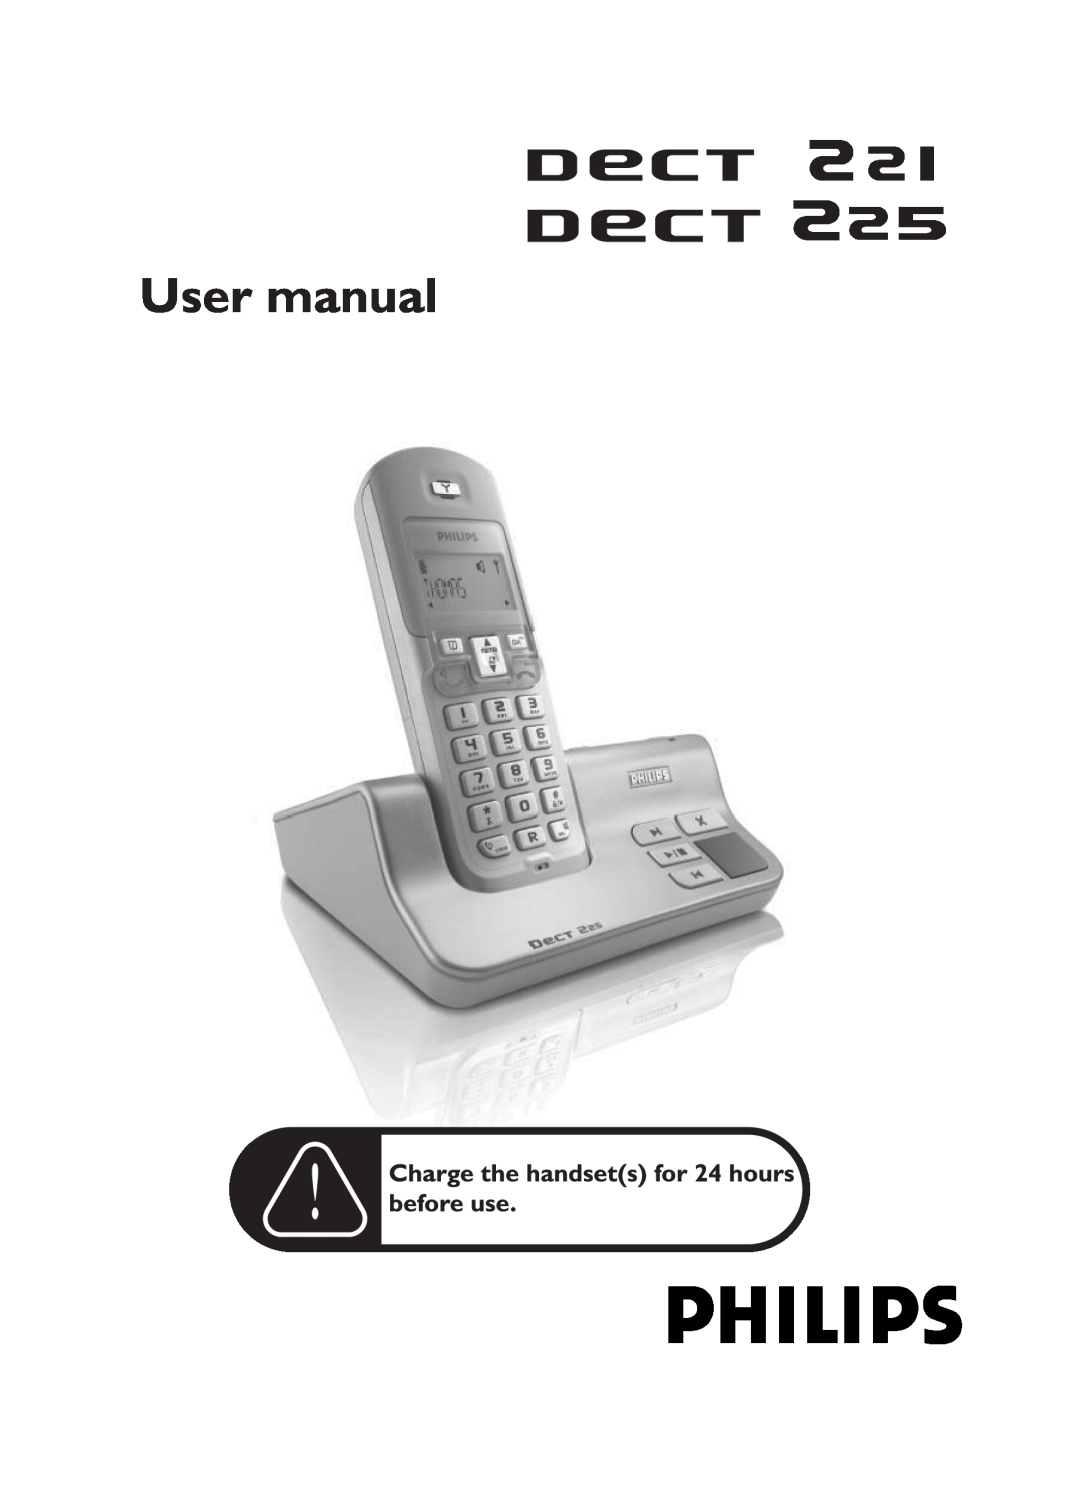 Philips DECT 221 user manual User manual 